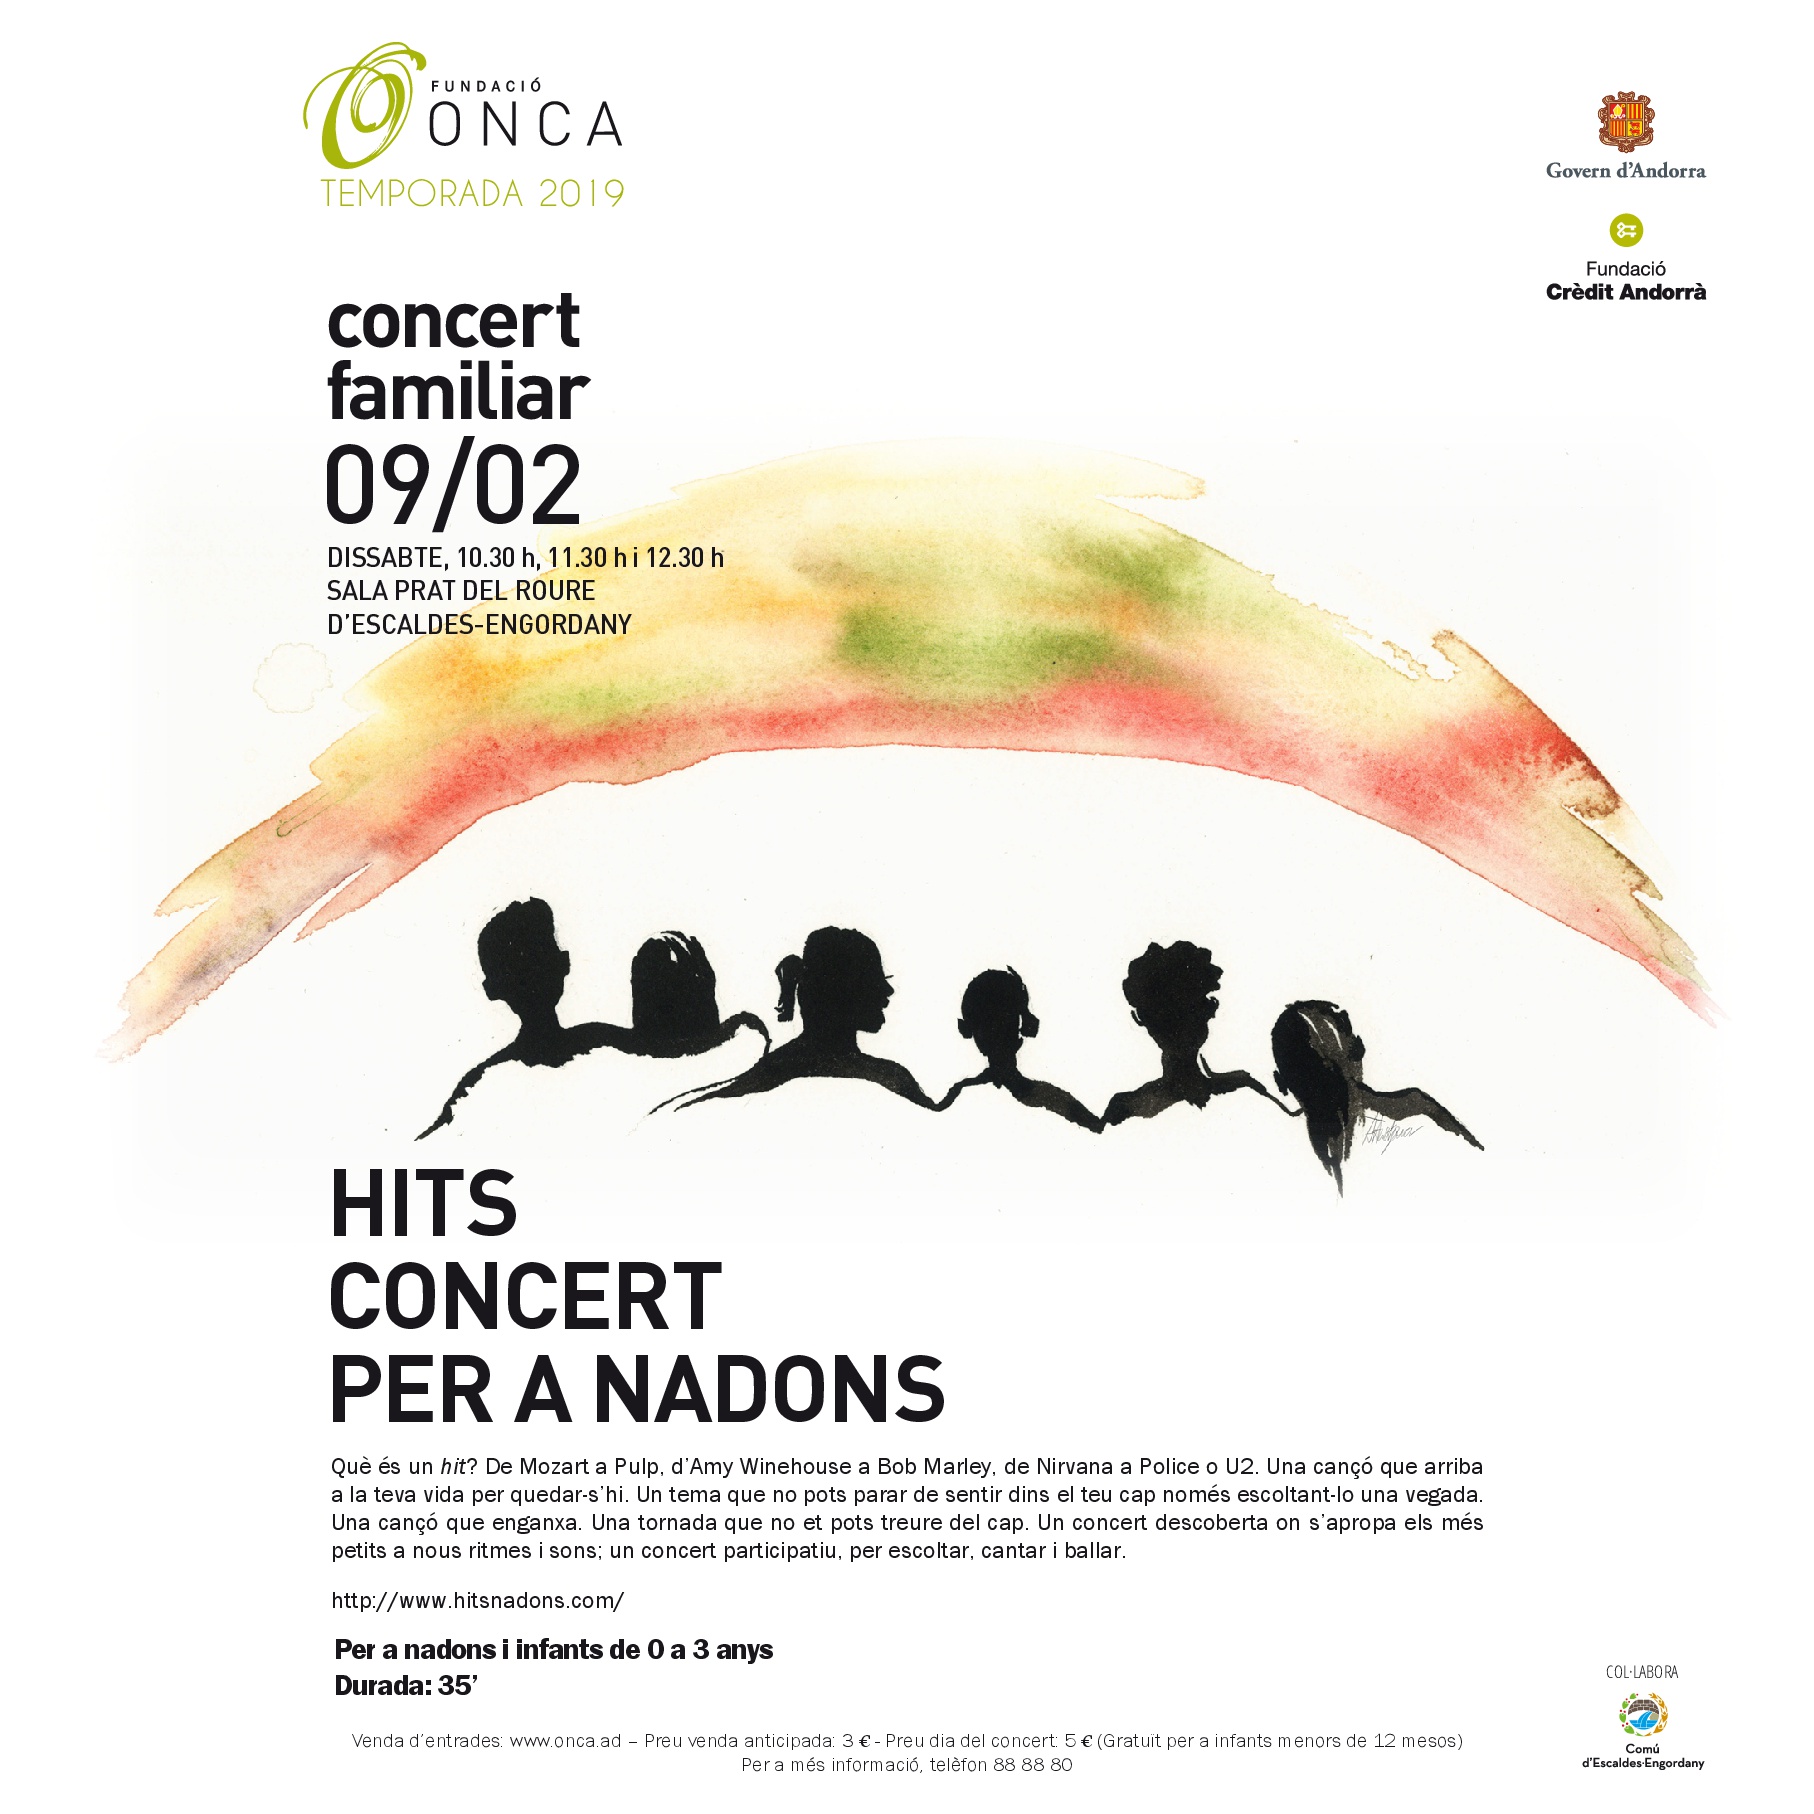 Concert familiar: Concert per a nadons